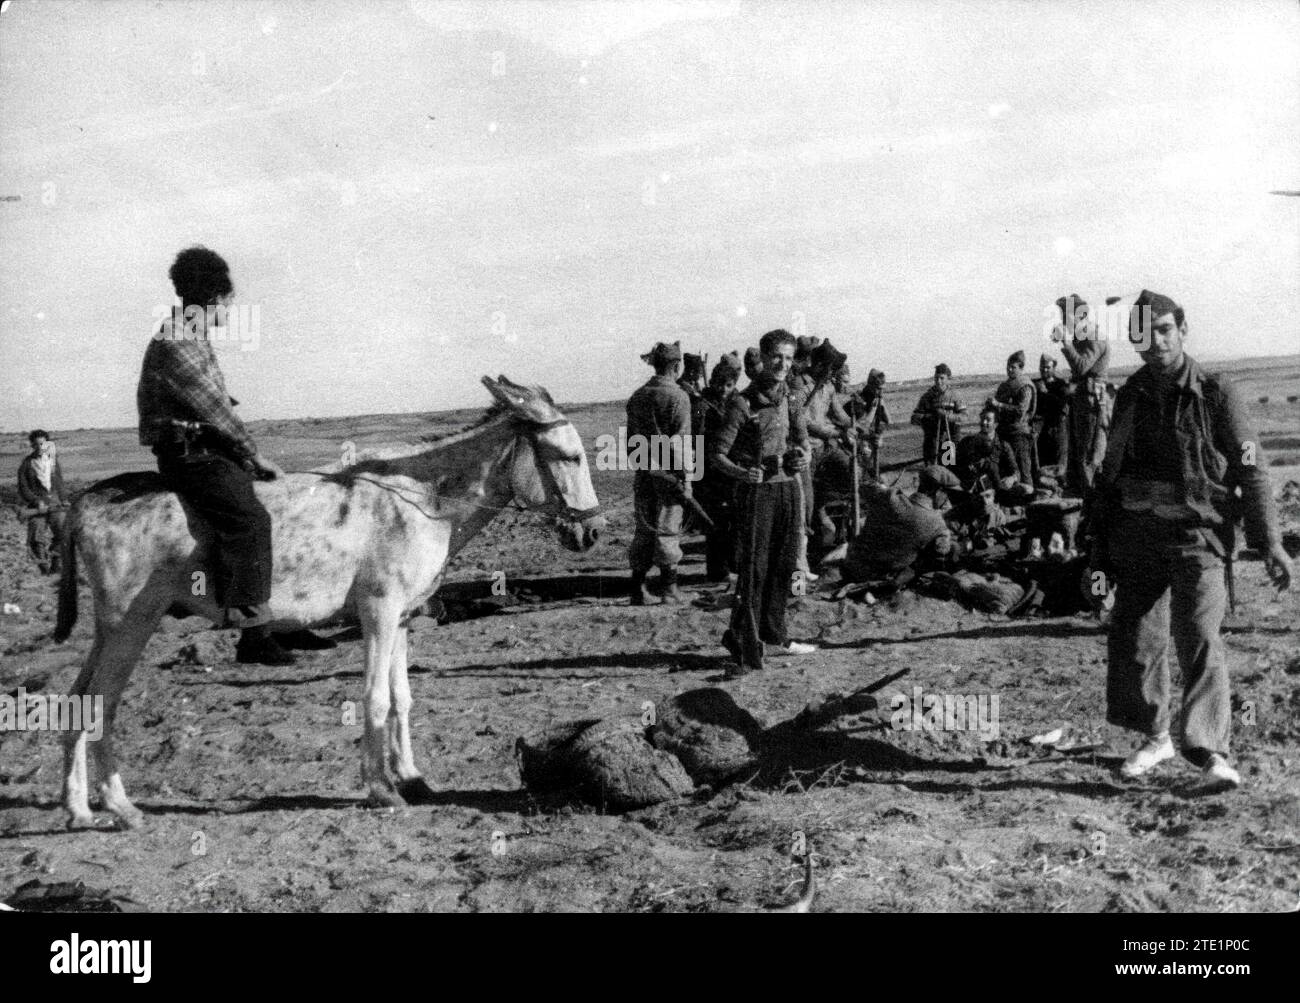 01/09/1936. Fotogiornalista che usa un asino per raggiungere gli avamposti del fronte del Tago. Crediti: Album / Archivo ABC Foto Stock